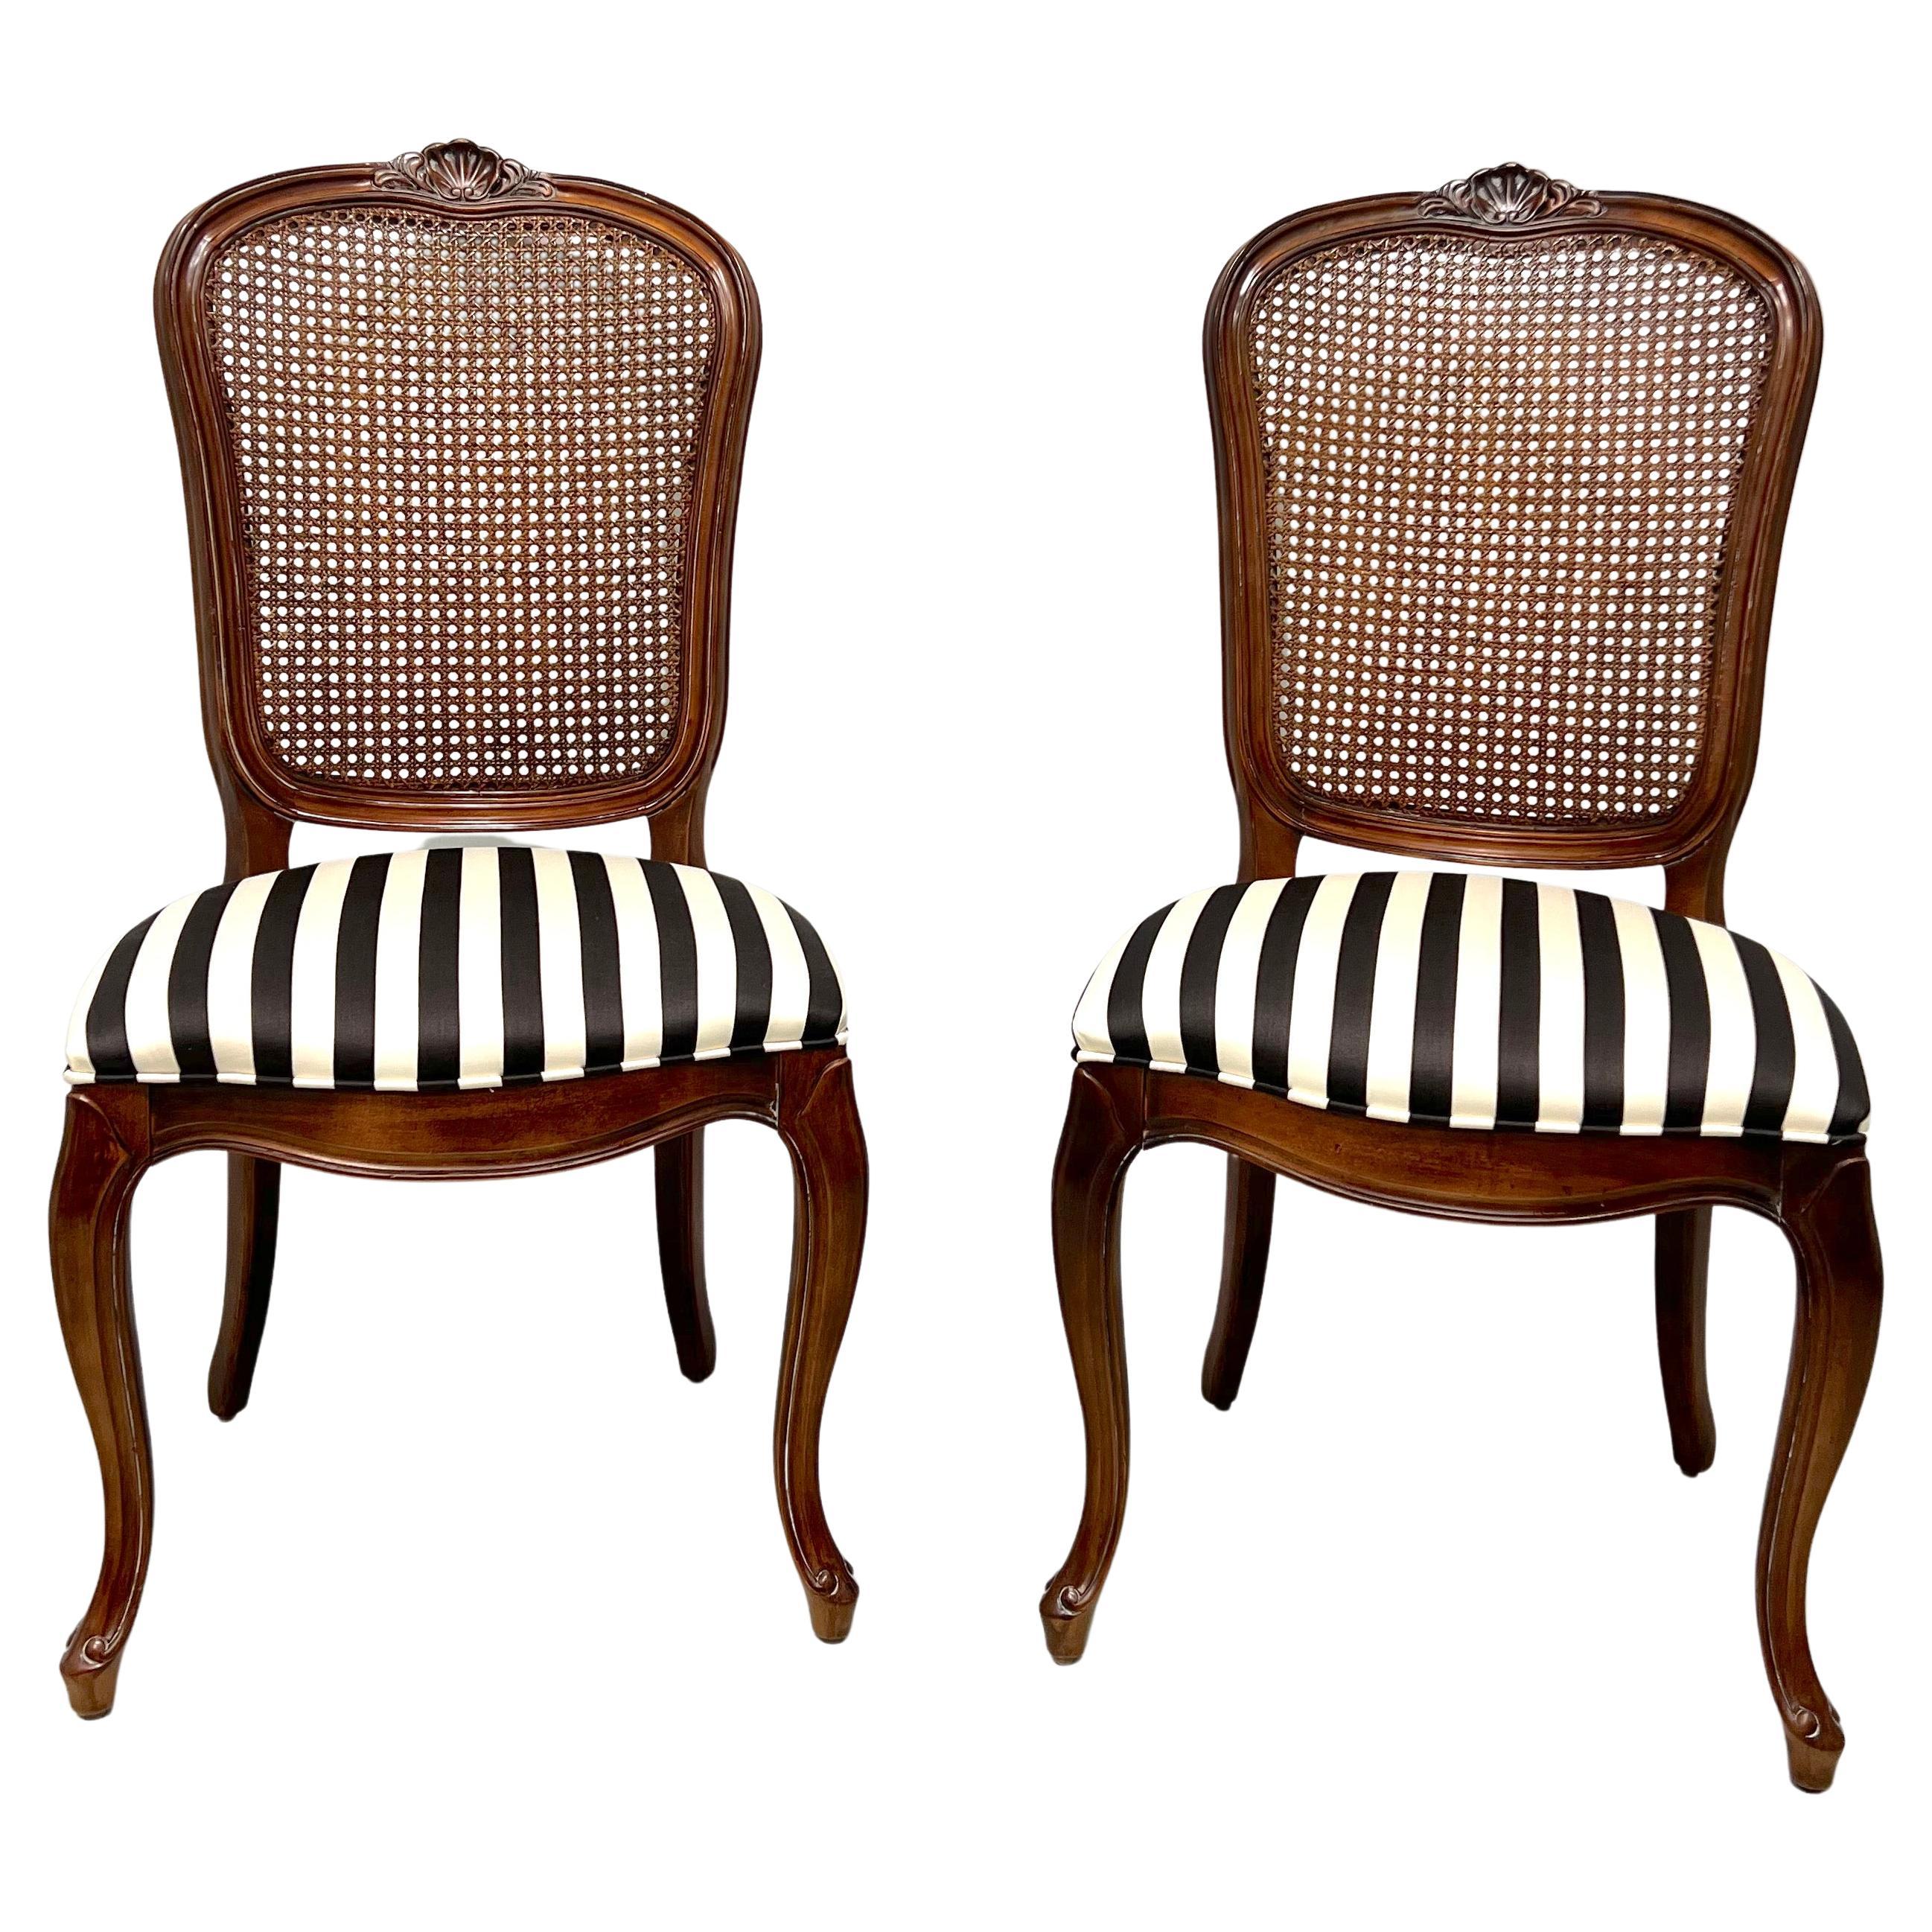 Paire B de chaises de salle à manger françaises cannées de cerisier de la collection Chardeau du XXe siècle